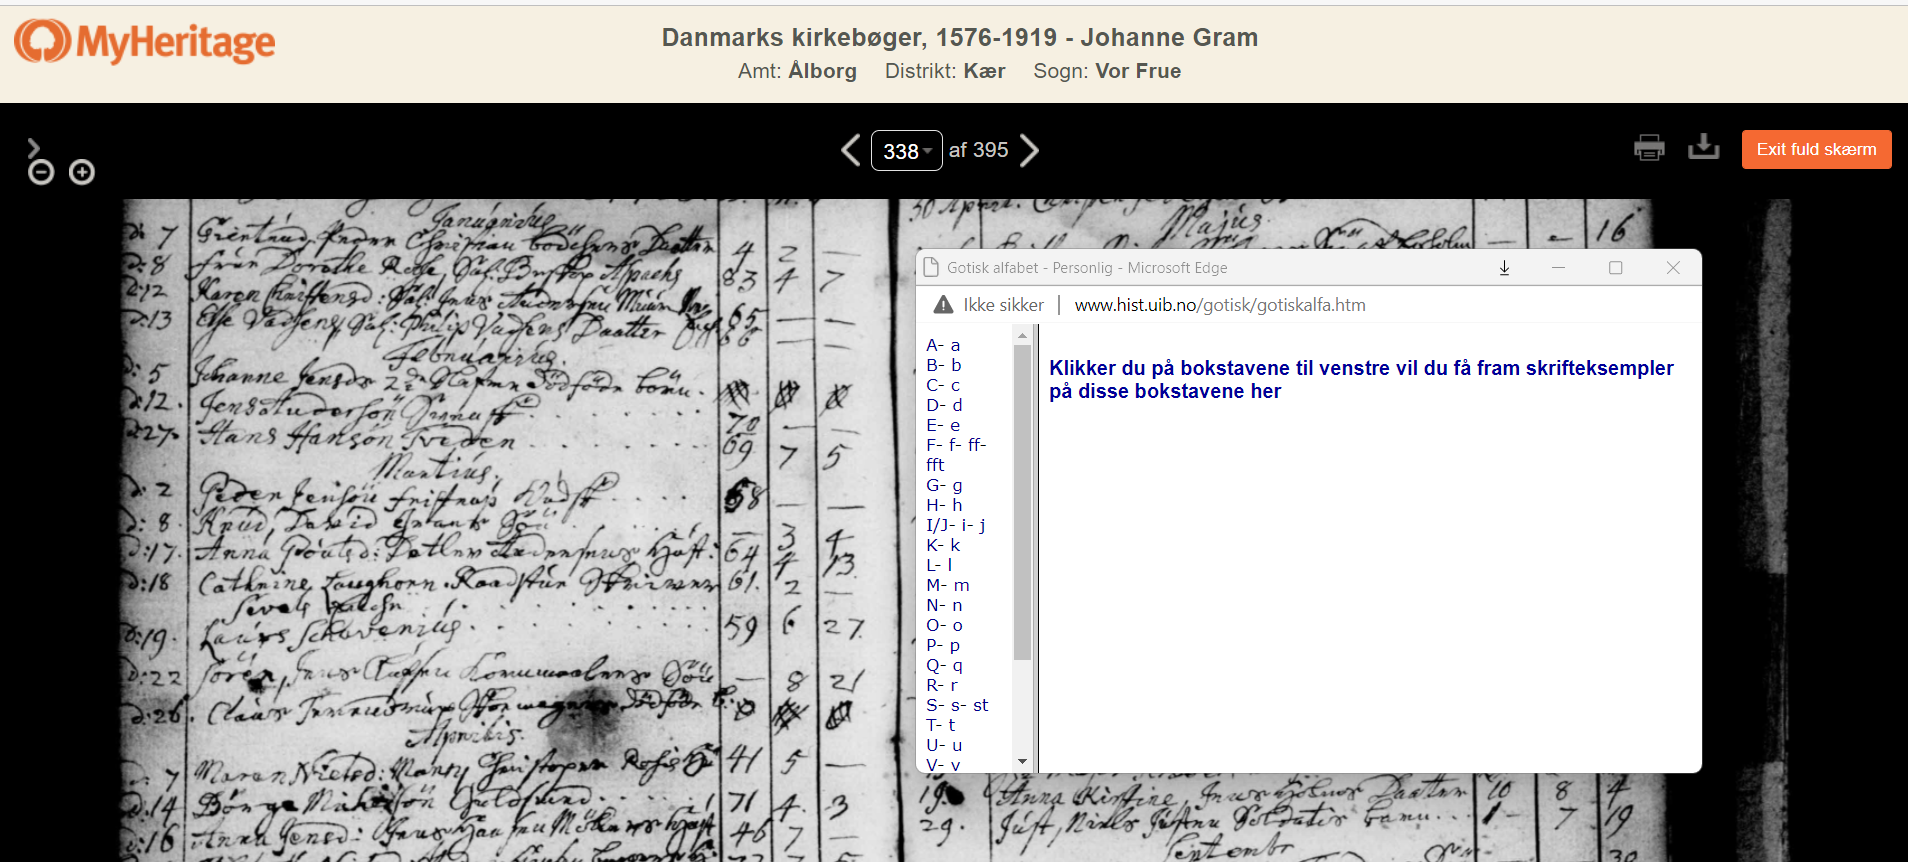 Kursus i gotisk med udgangspunkt i Danmarks kirkebøger, 1576-1919 på MyHeritage